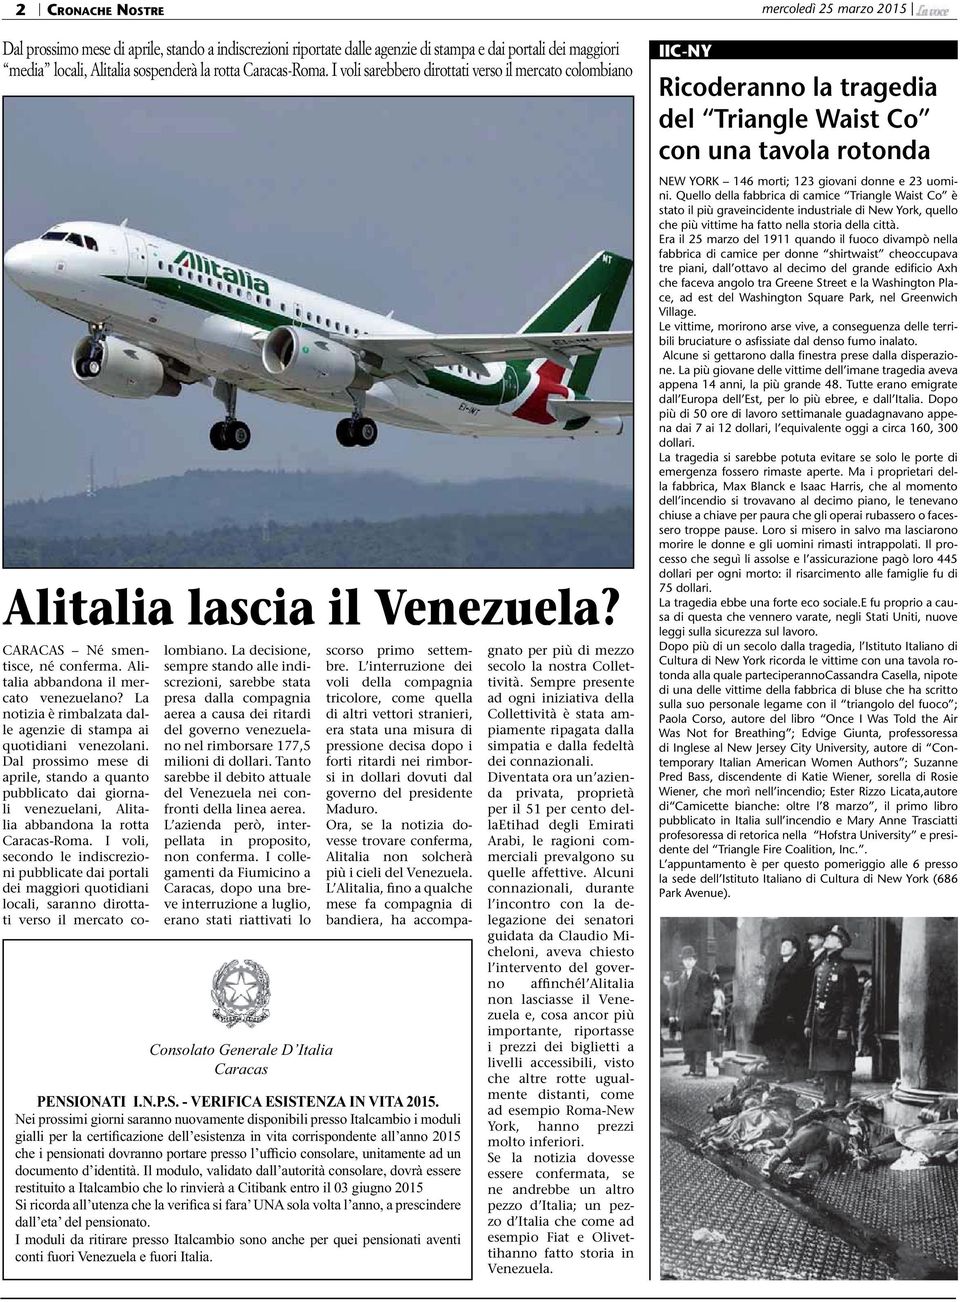 La notizia è rimbalzata dalle agenzie di stampa ai quotidiani venezolani. Dal prossimo mese di aprile, stando a quanto pubblicato dai giornali venezuelani, Alitalia abbandona la rotta Caracas-Roma.